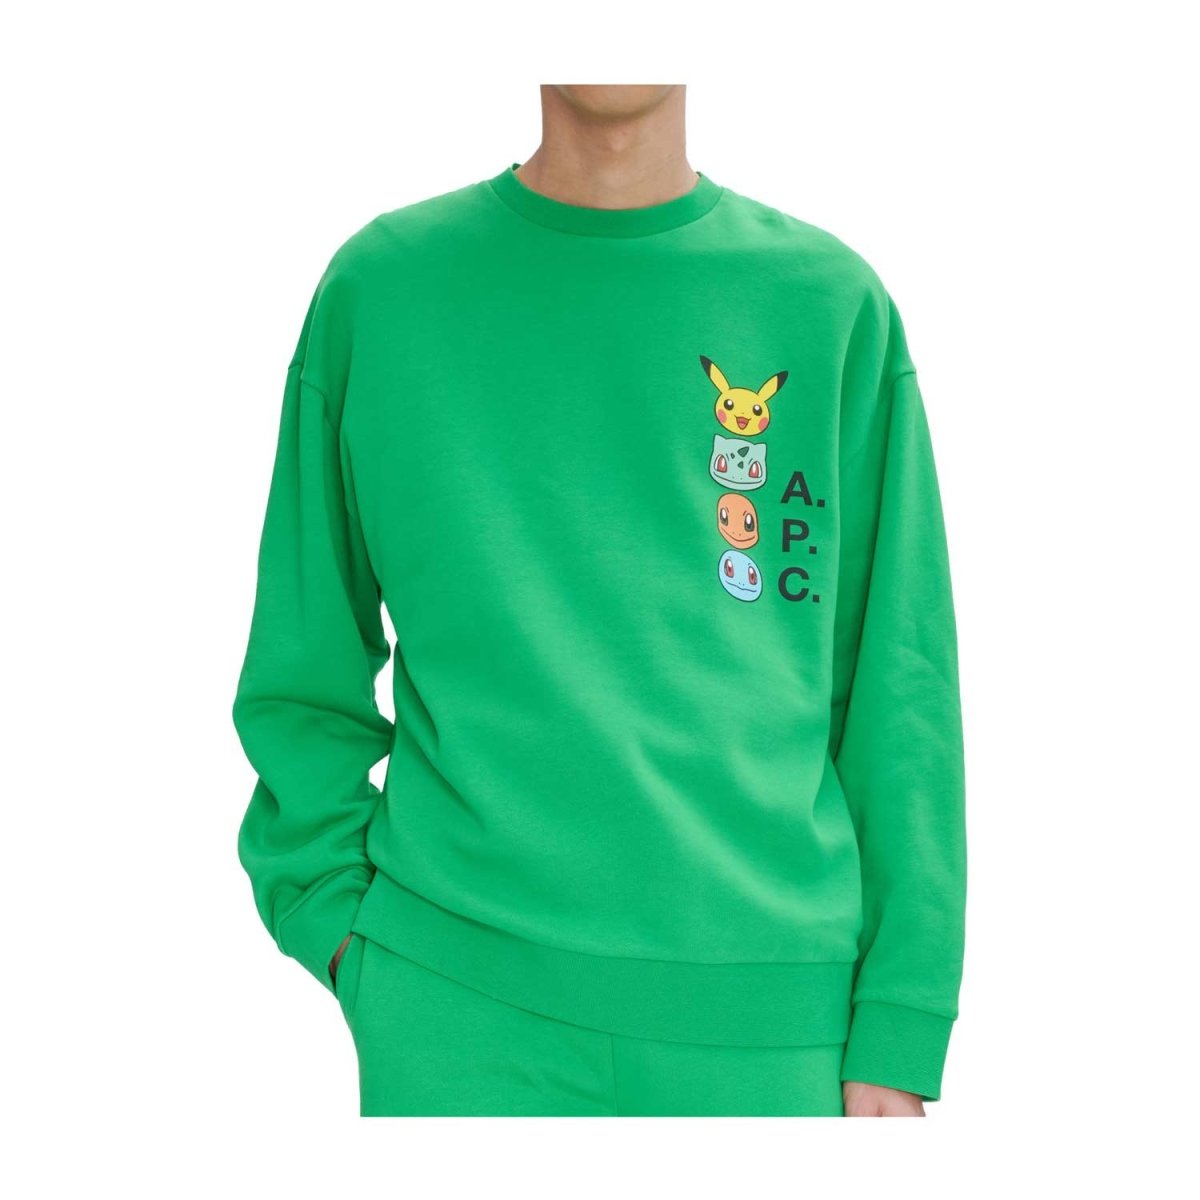 Pokémon × A.P.C.: Green The Portrait Sweatshirt - Adult